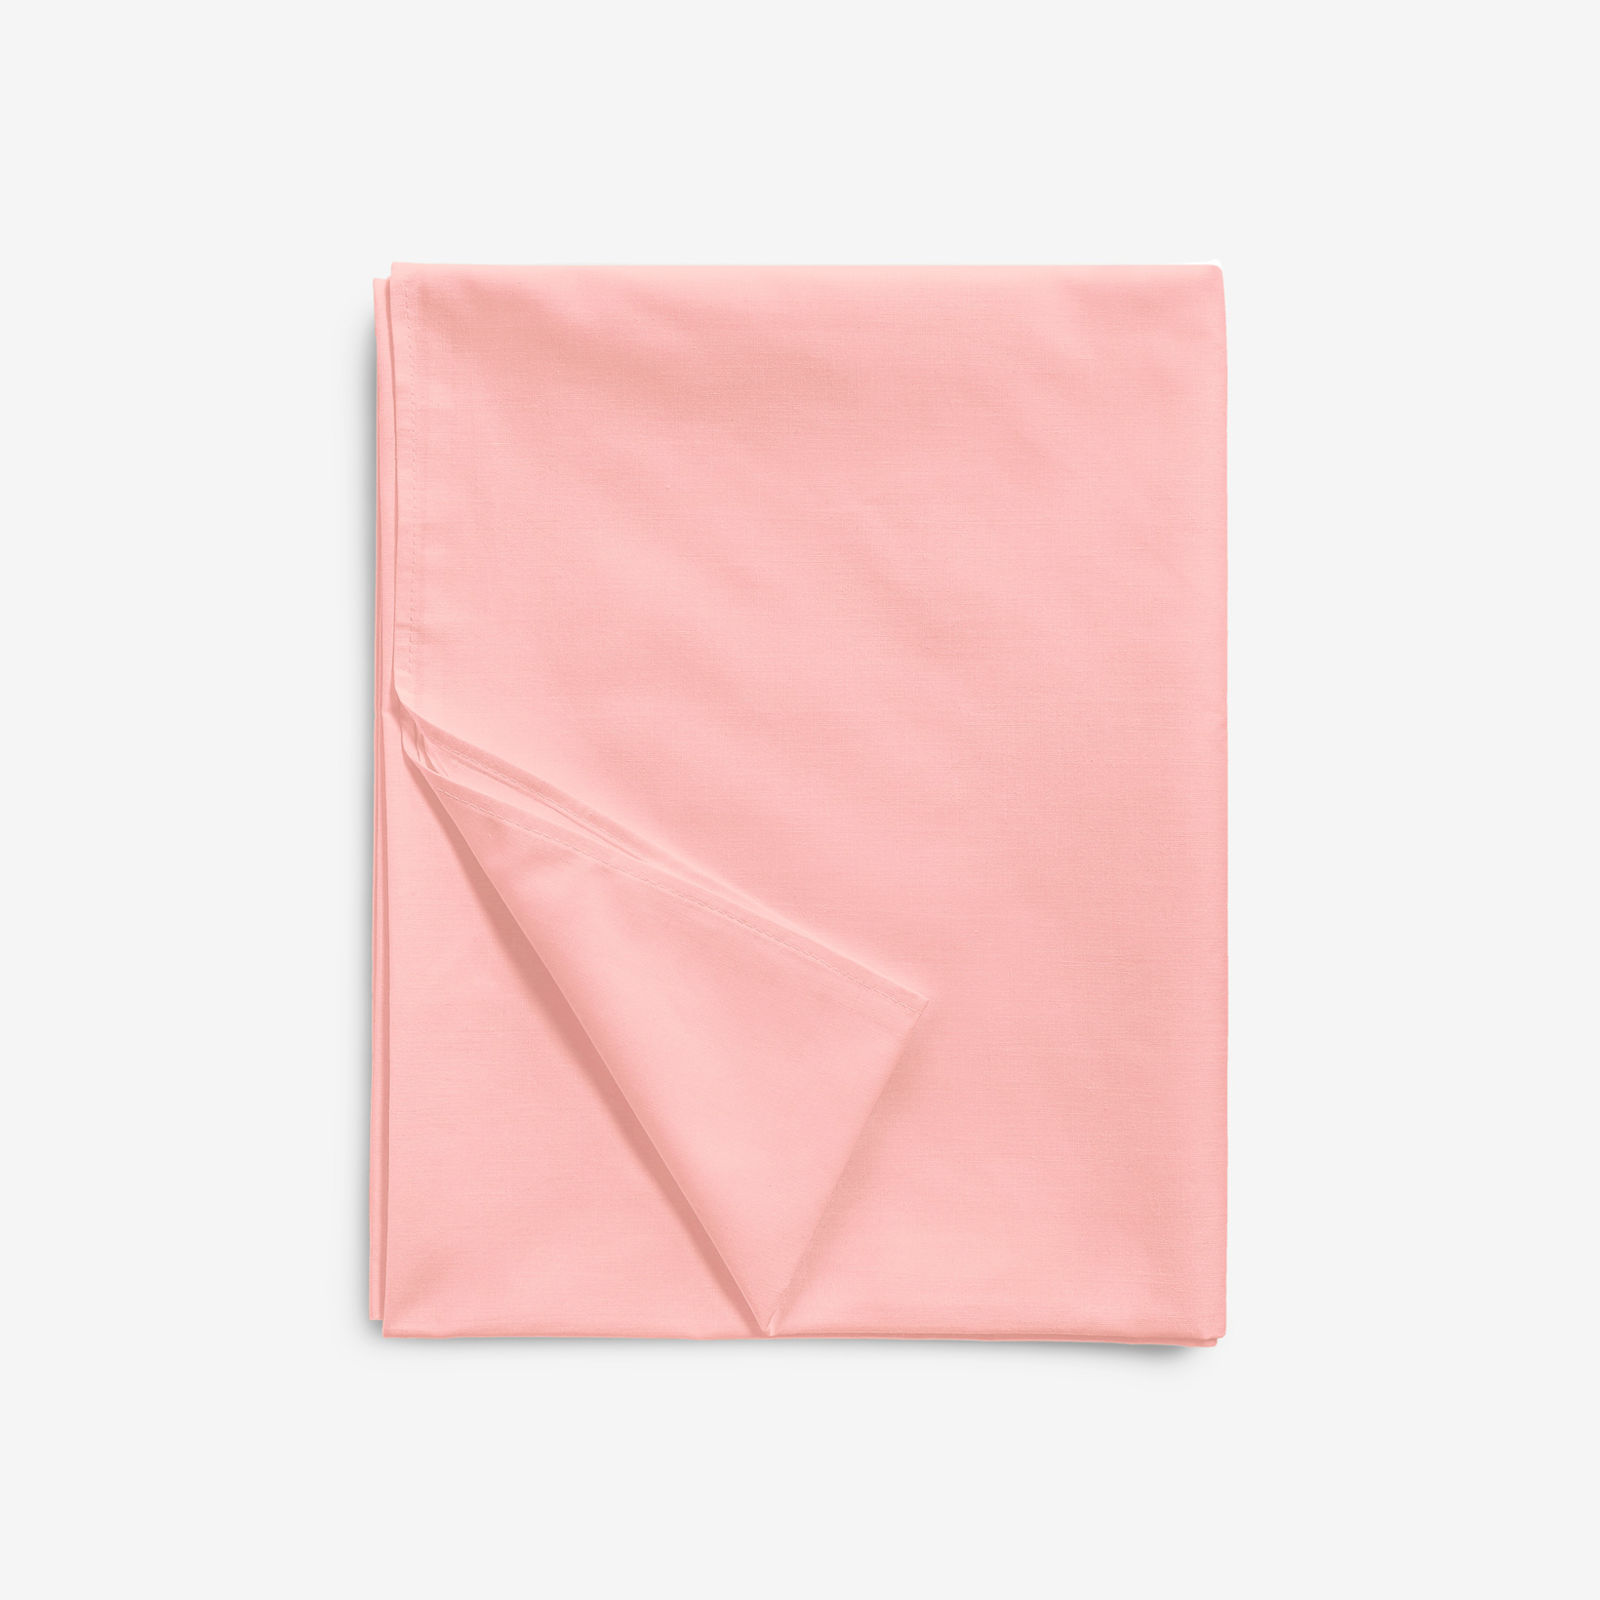 Sima pamut lepedő - pasztell rózsaszín